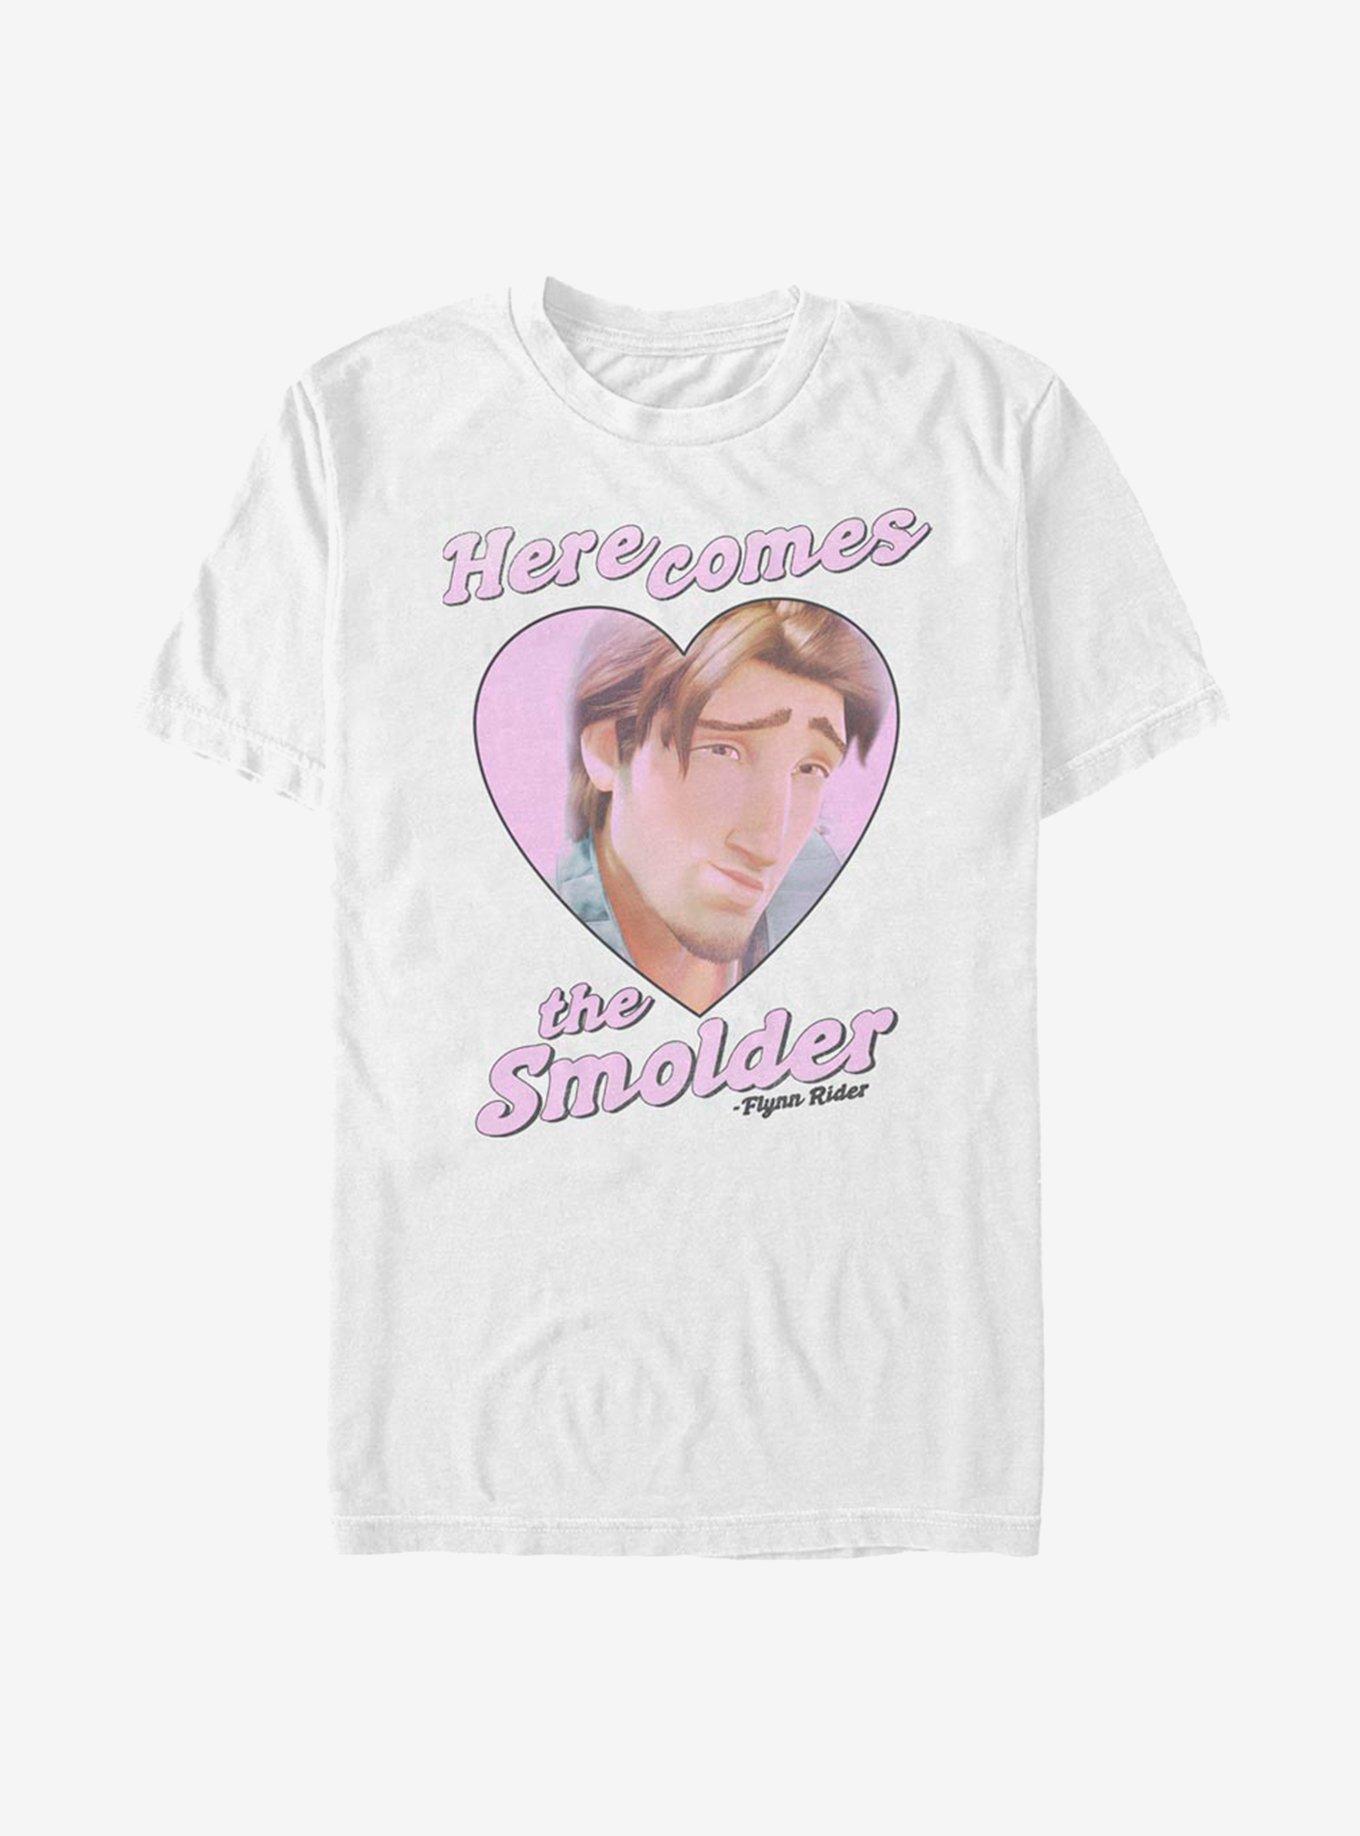 Disney Tangled Smoulder T-Shirt